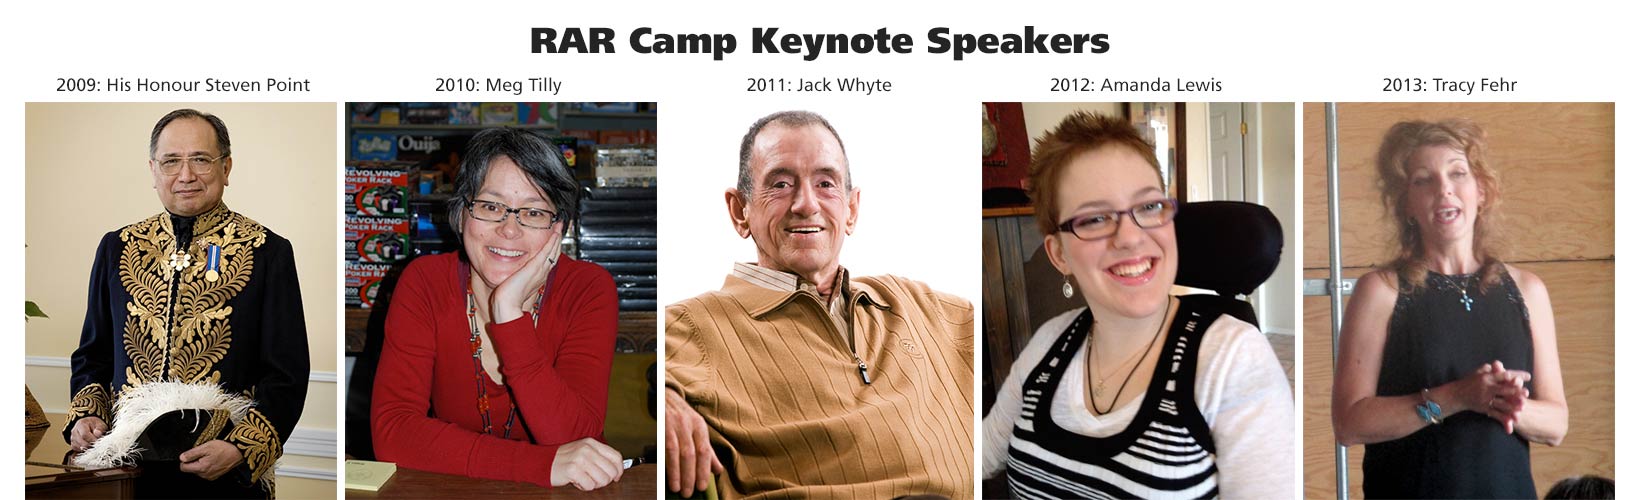 RAR Camp Keynote Speakers